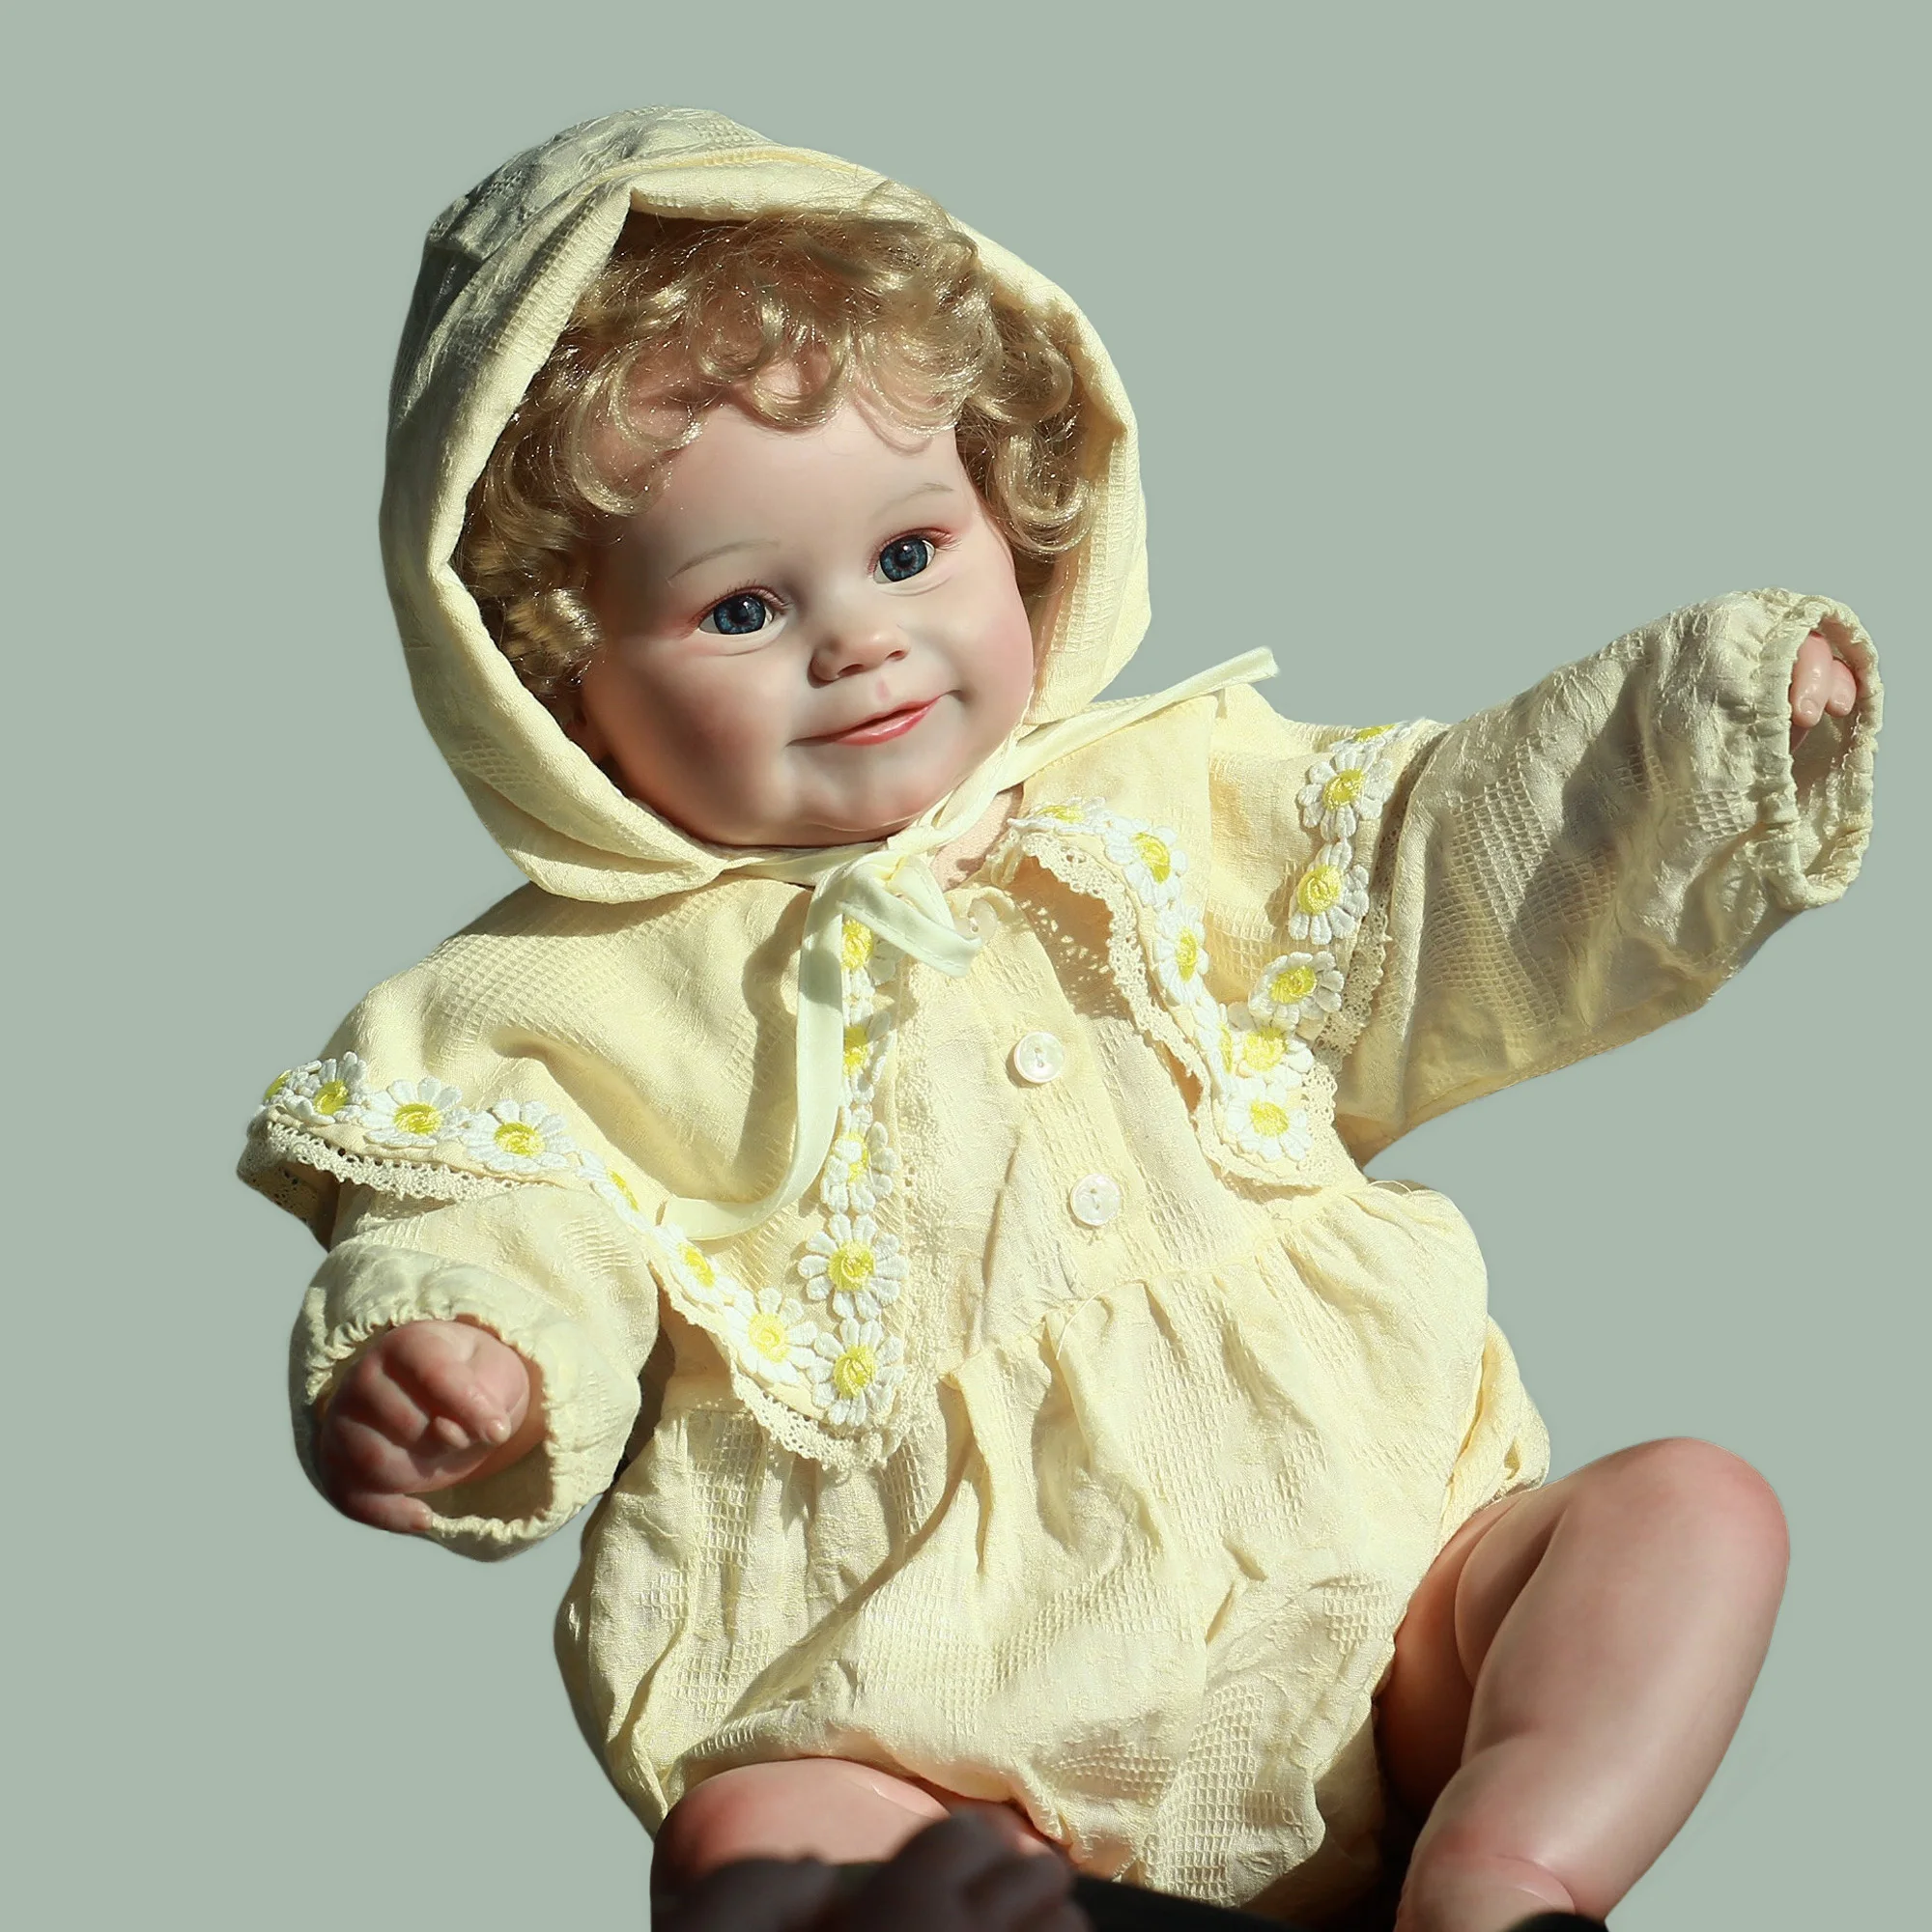 

Saskia 24-дюймовая готовая Кукла Новорожденный малыш Реалистичная кукла ручной работы реалистичные Подарки для ребенка Реборн куклы для девоч...